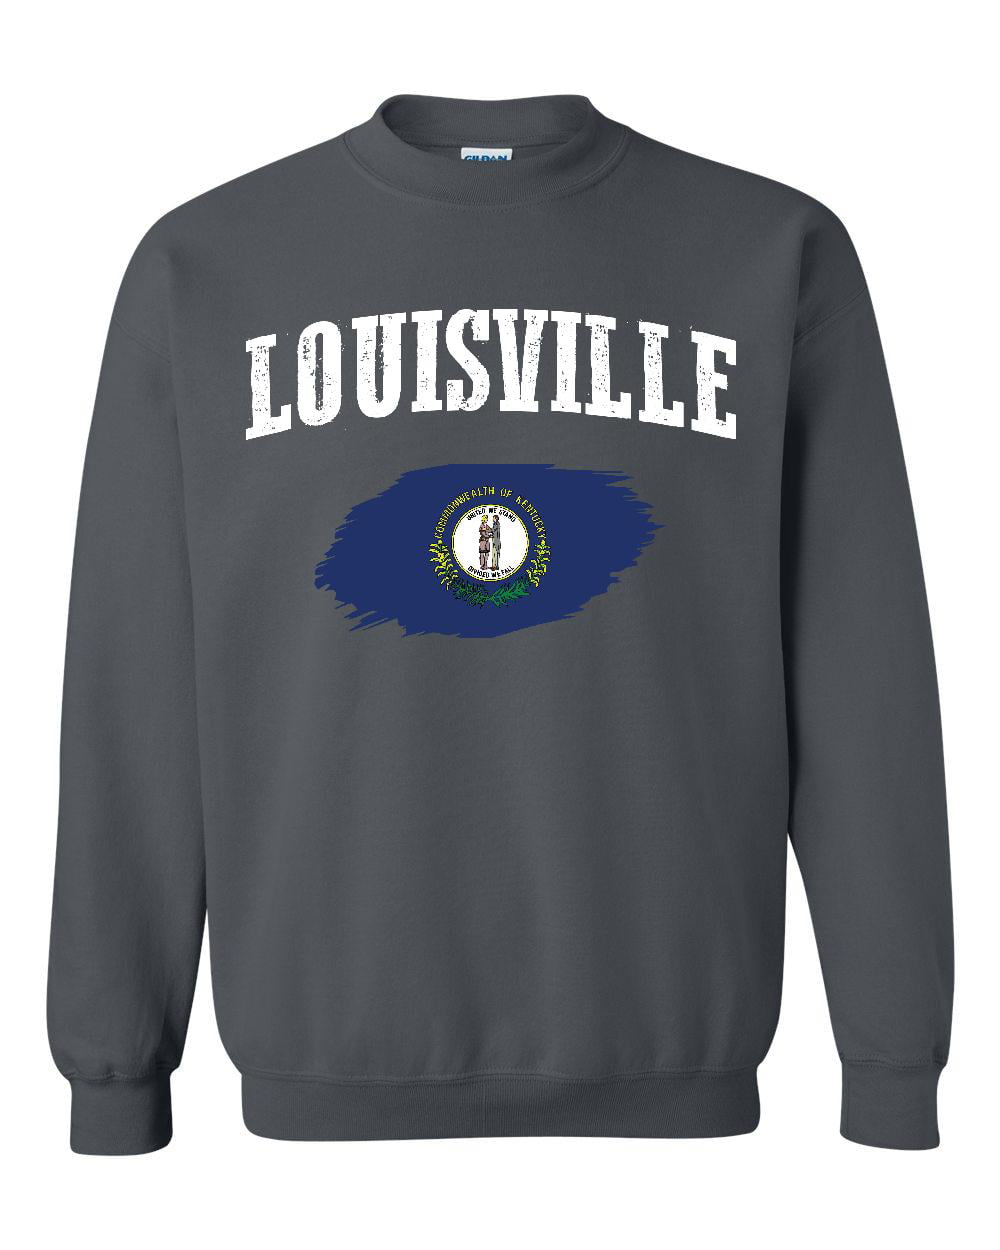 Plus Sweatshirts and Hoodies - Louisville 